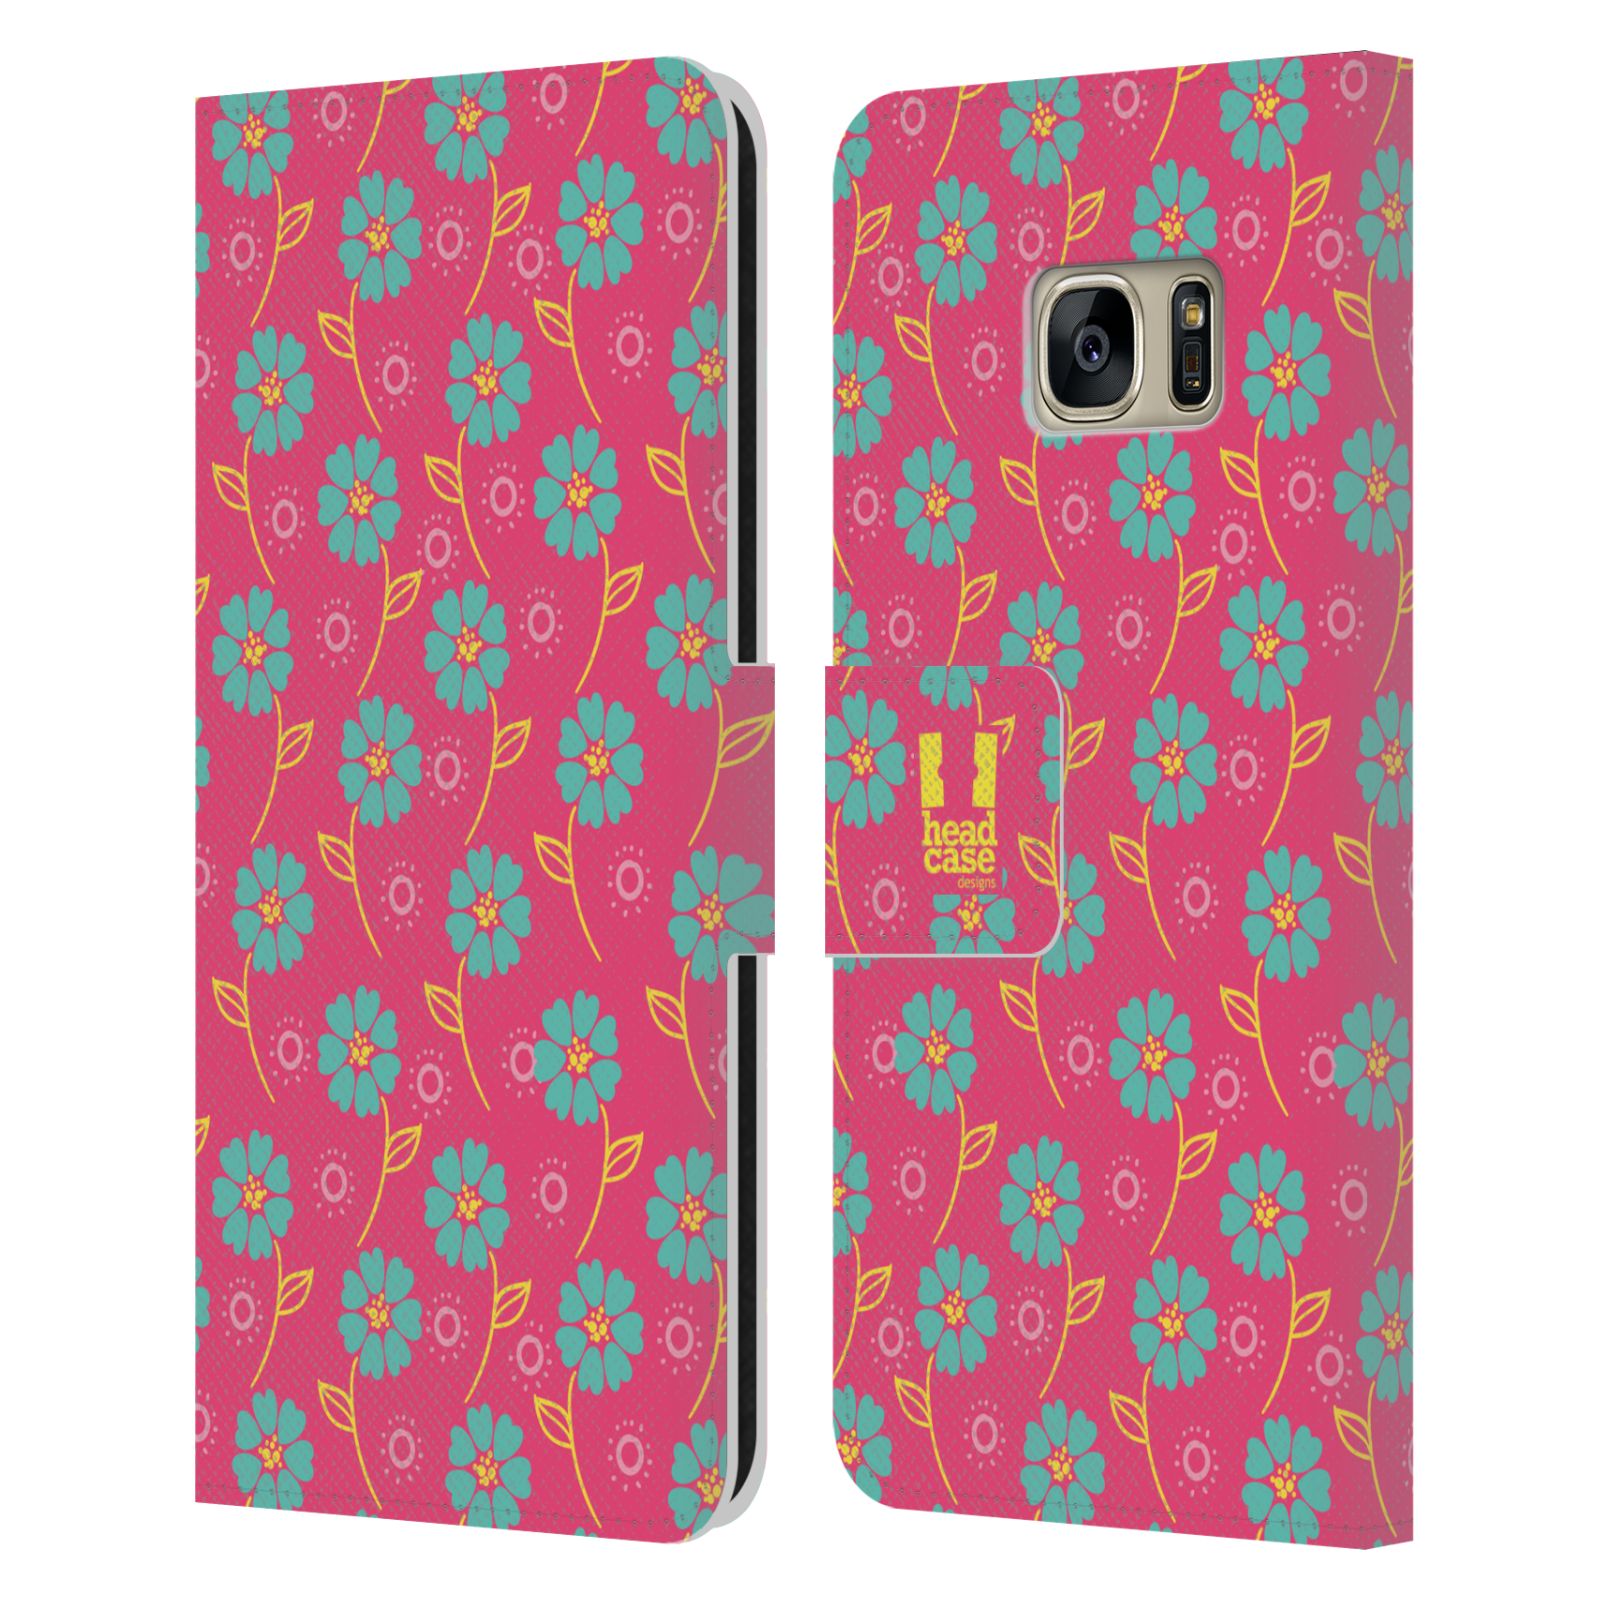 HEAD CASE Flipové pouzdro pro mobil Samsung Galaxy S7 (G9300) Slovanský vzor růžová a modrá květiny